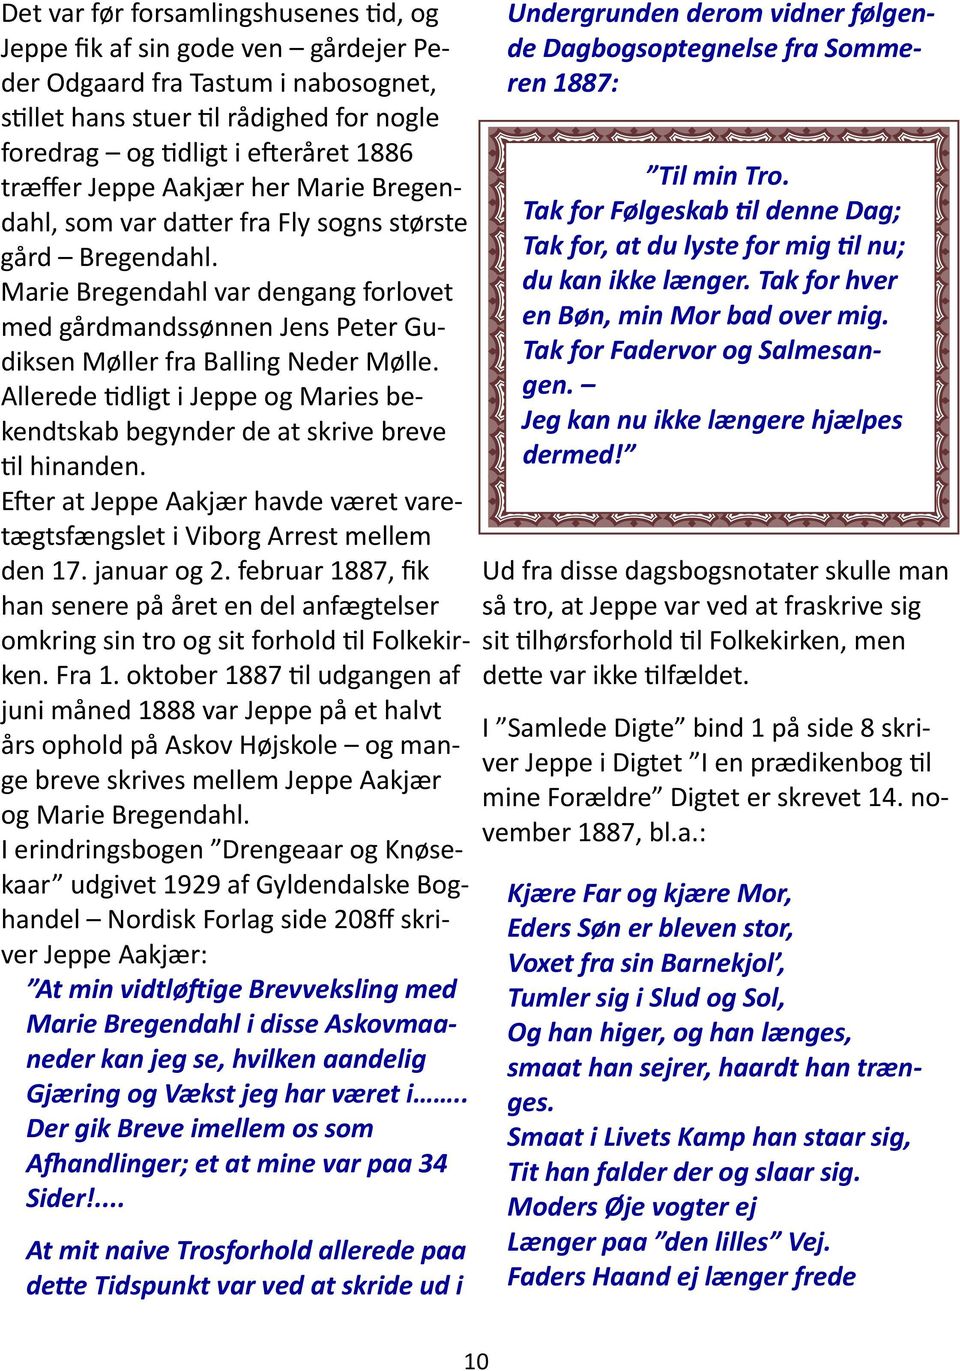 Allerede dligt i Jeppe og Maries bekendtskab begynder de at skrive breve l hinanden. E er at Jeppe Aakjær havde været varetægtsfængslet i Viborg Arrest mellem den 17. januar og 2.